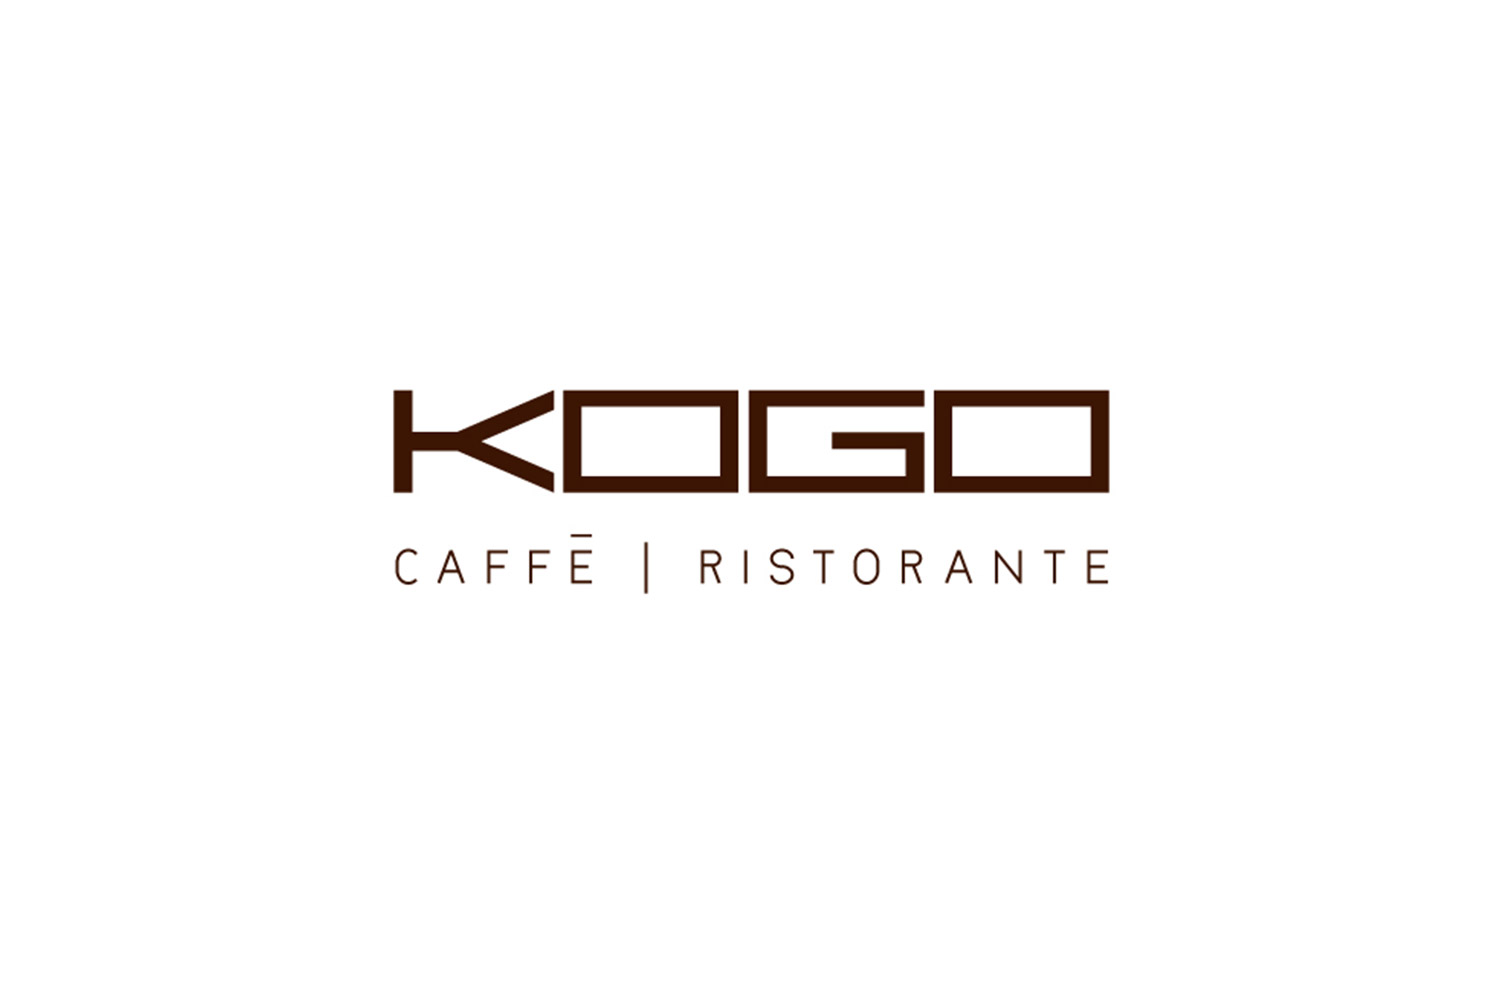 KOGO, corporate identity image